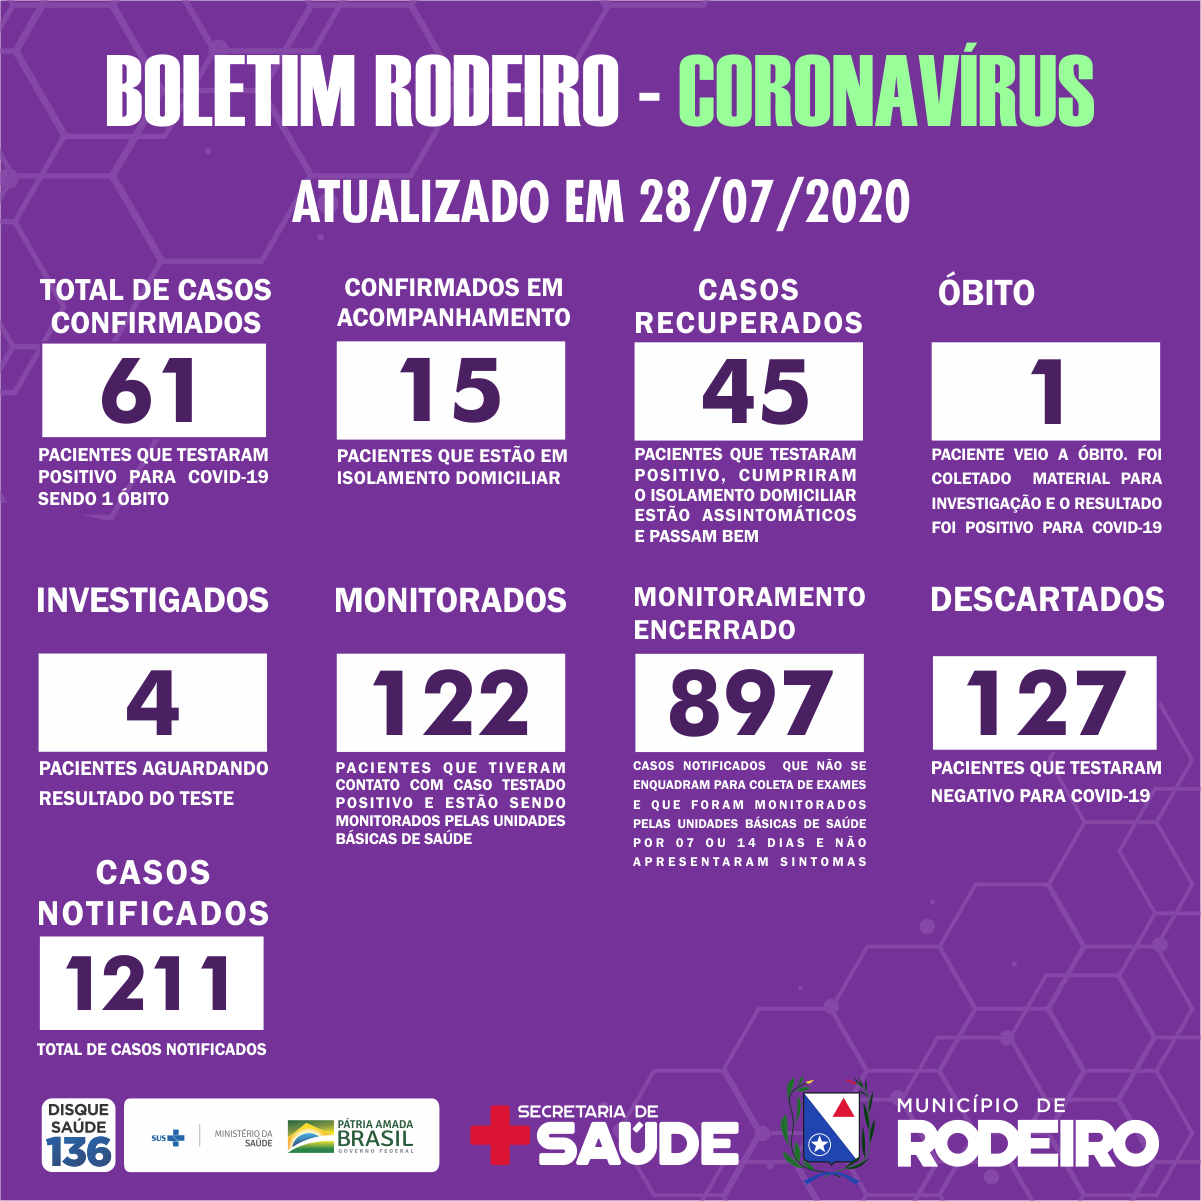 Boletim Epidemiológico do Município de Rodeiro coronavírus, atualizado em 28/07/2020